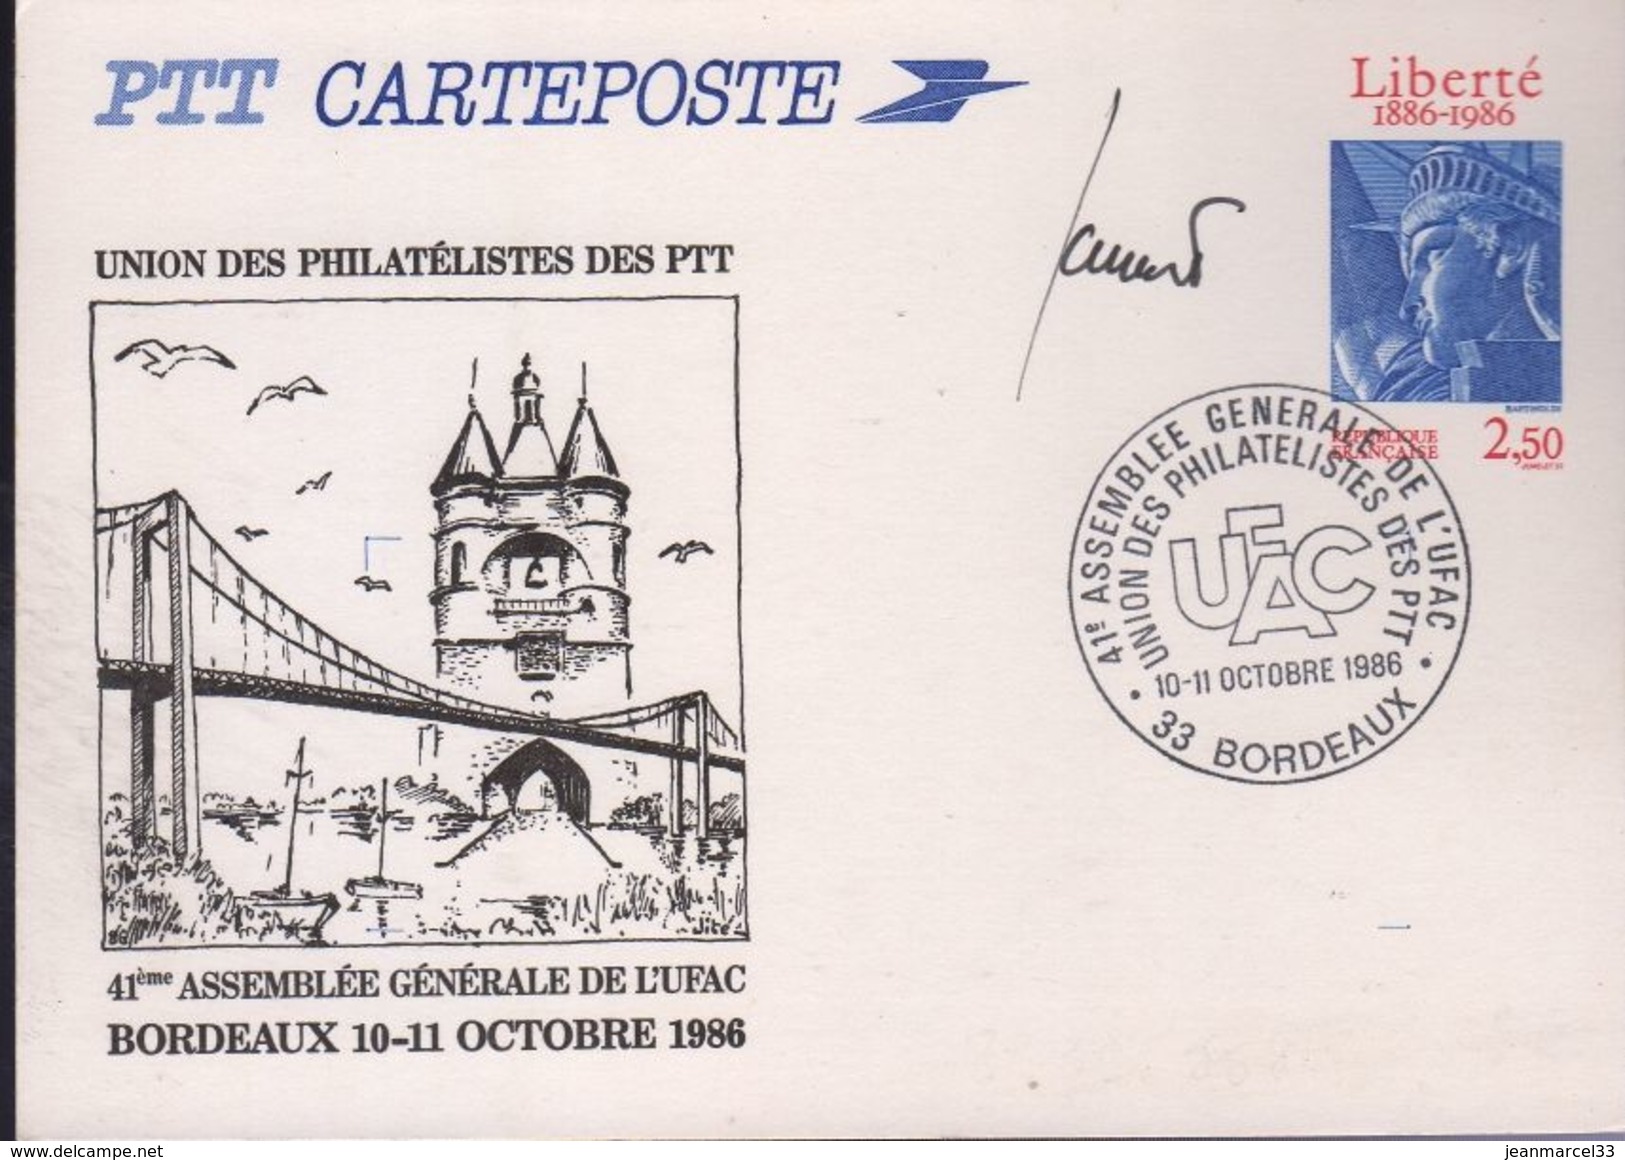 Carte Postale Entier 2,50 Liberté 1886-1986 Repiquée 41e Assemblée Générale De L'UFAC Oblitération Commémorative Bdx - Cartes Postales Repiquages (avant 1995)